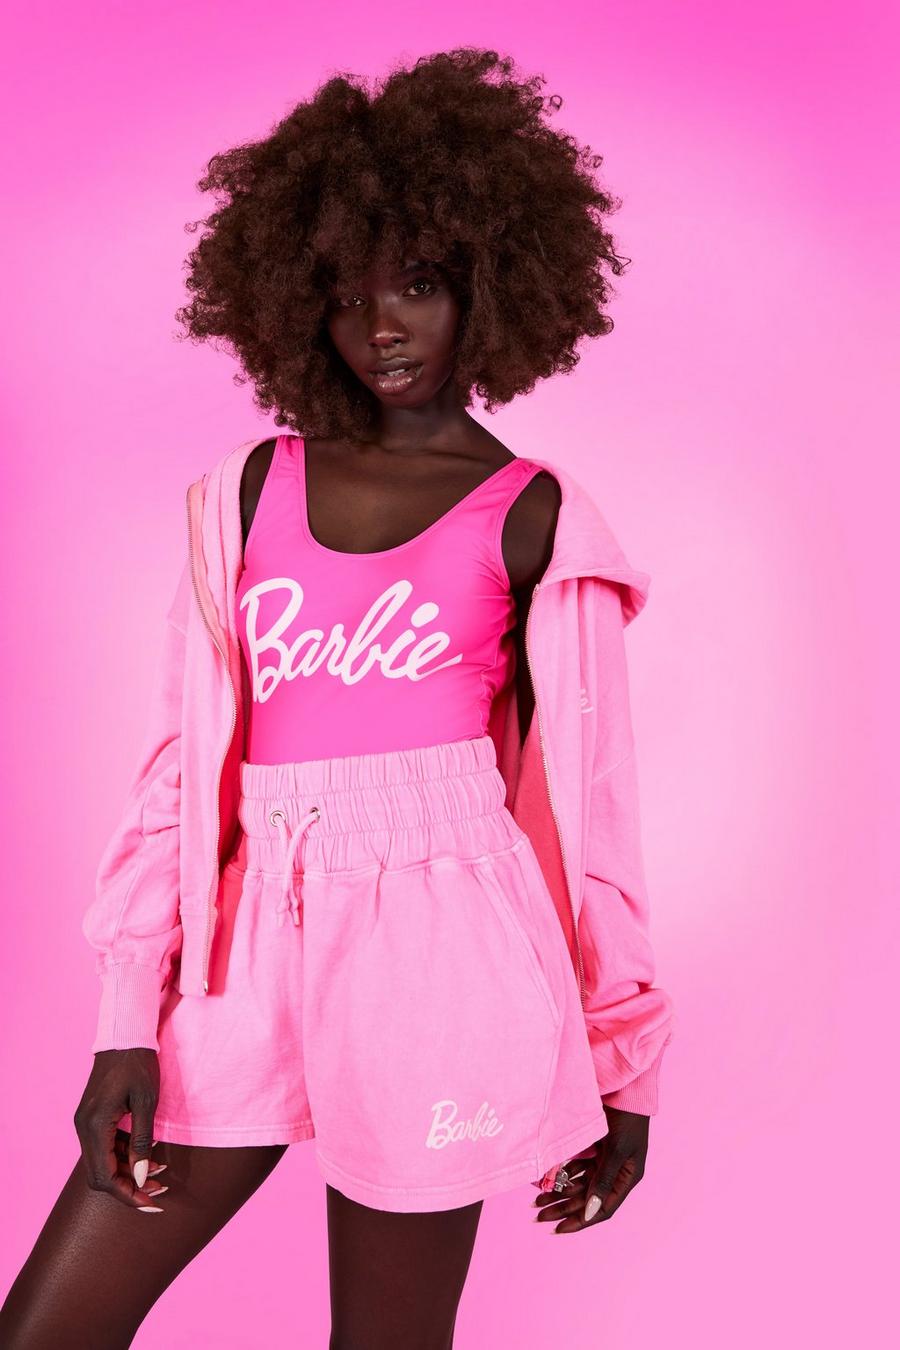 Pantalón corto deportivo con estampado de Barbie, Hot pink rosa